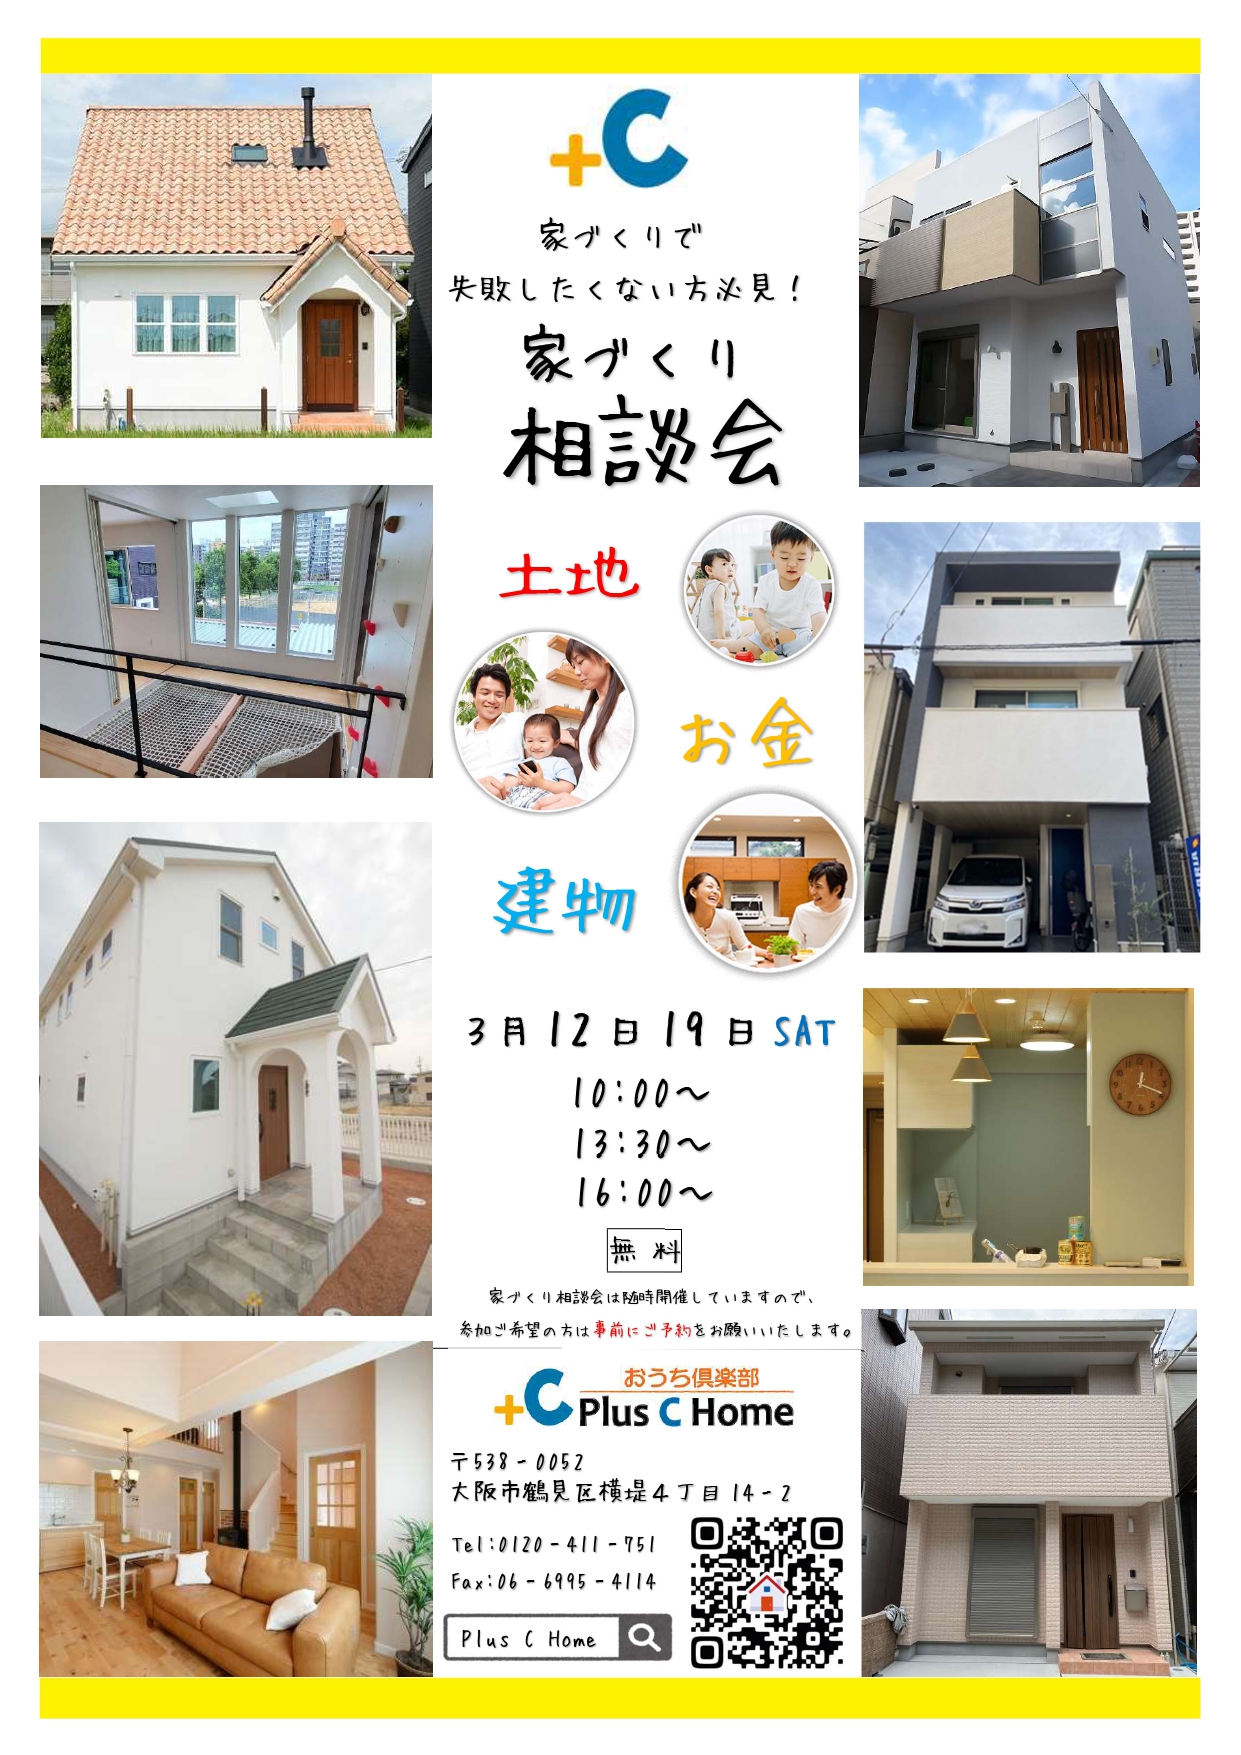 5組様のご縁に感謝です。大阪市鶴見区で高断熱・高気密住宅を建てております工務店Plus C Homeのお話会です♪